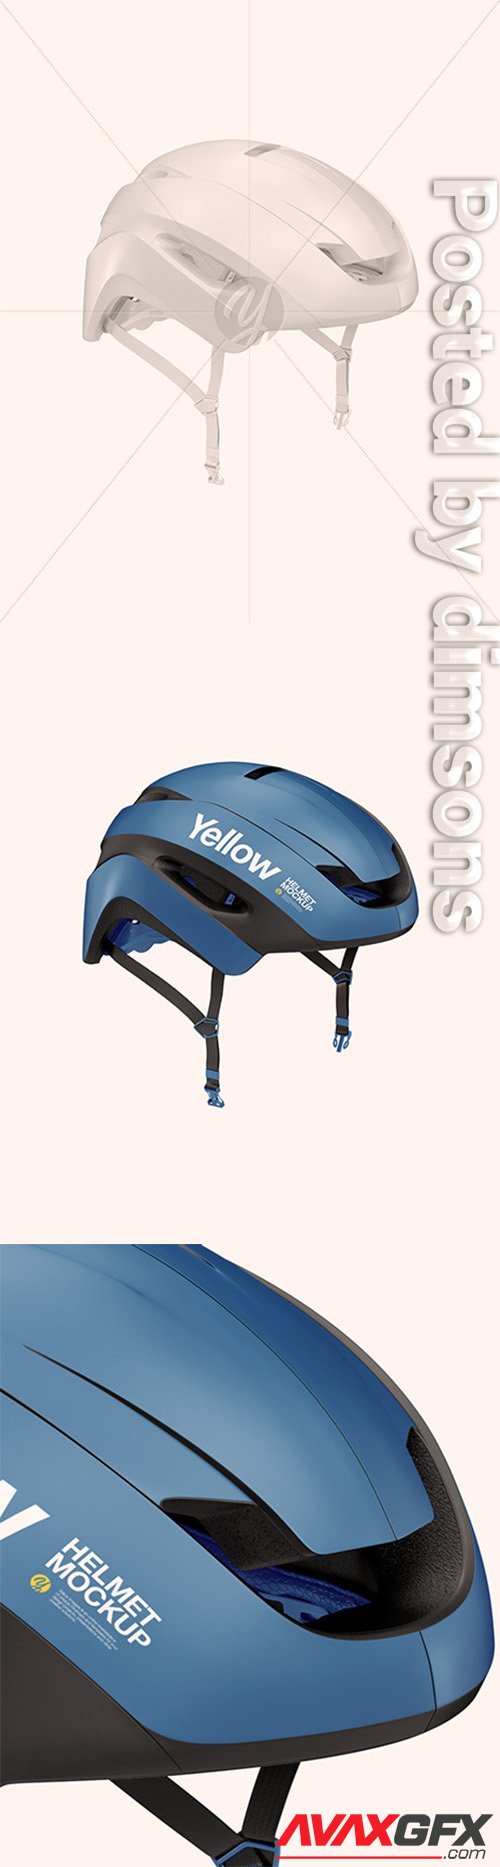 Cycling Helmet Mockup 46019 TIF